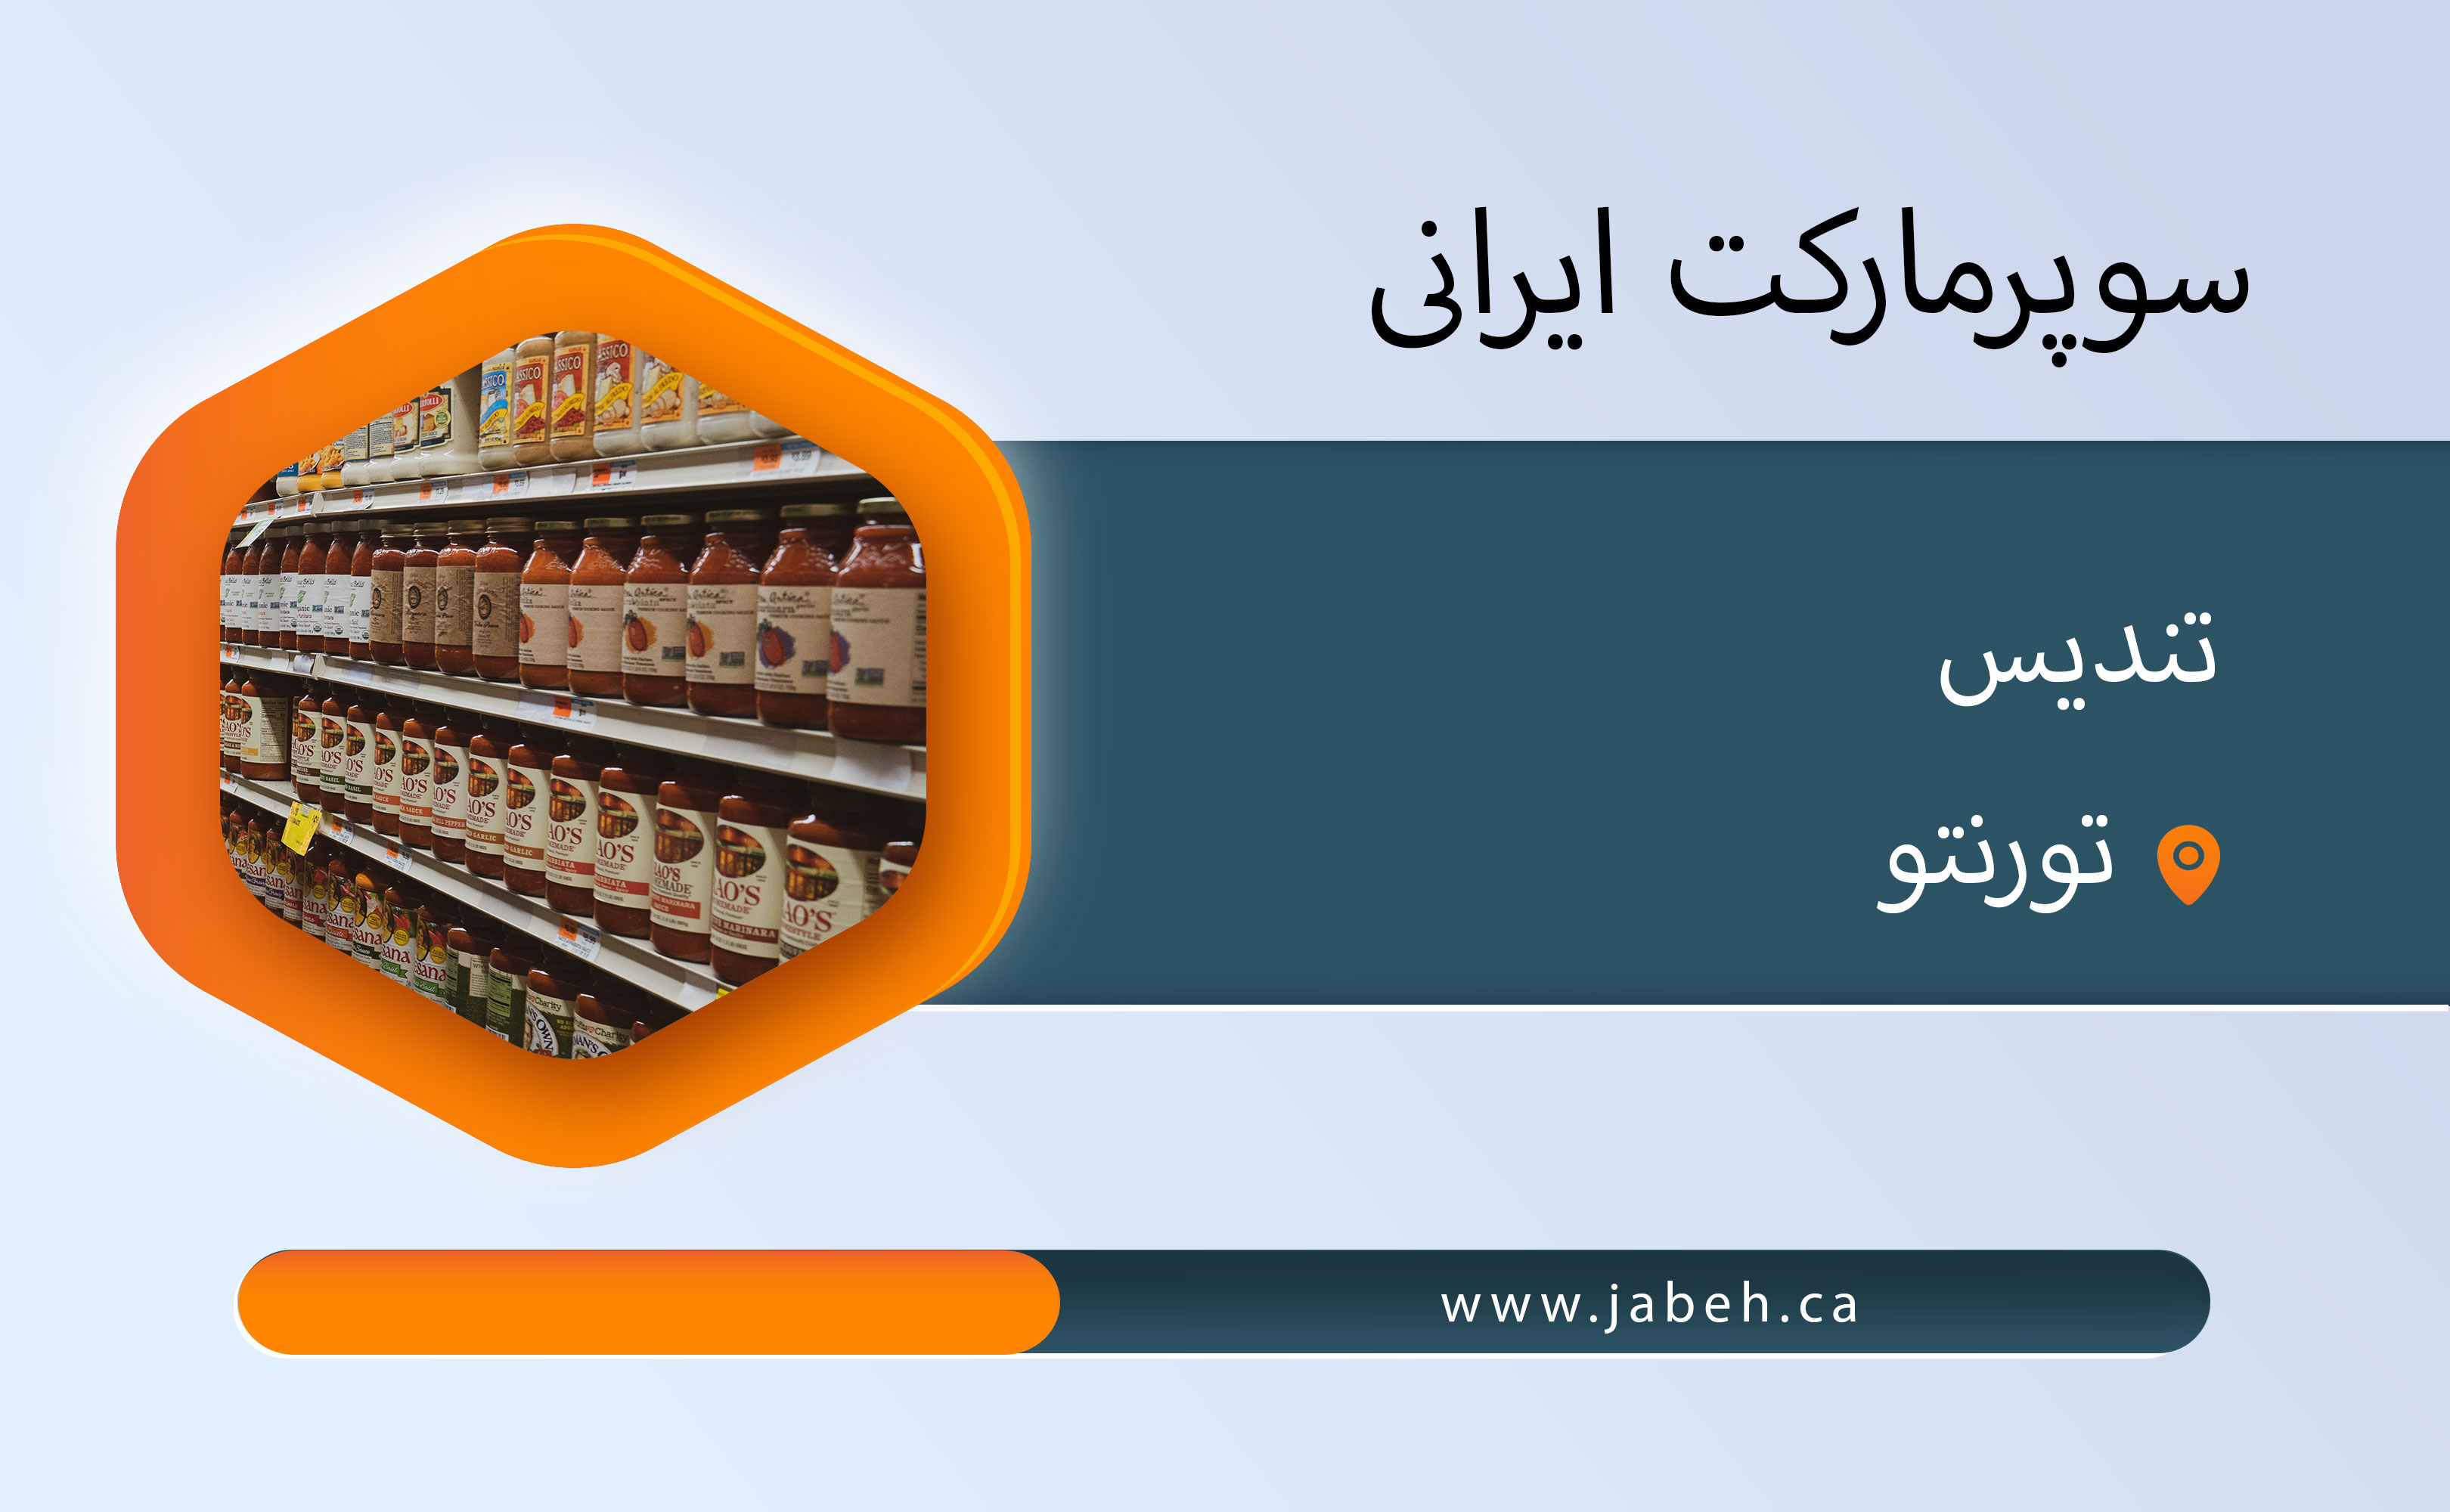 سوپر مارکت ایرانی تندیس در تورنتو